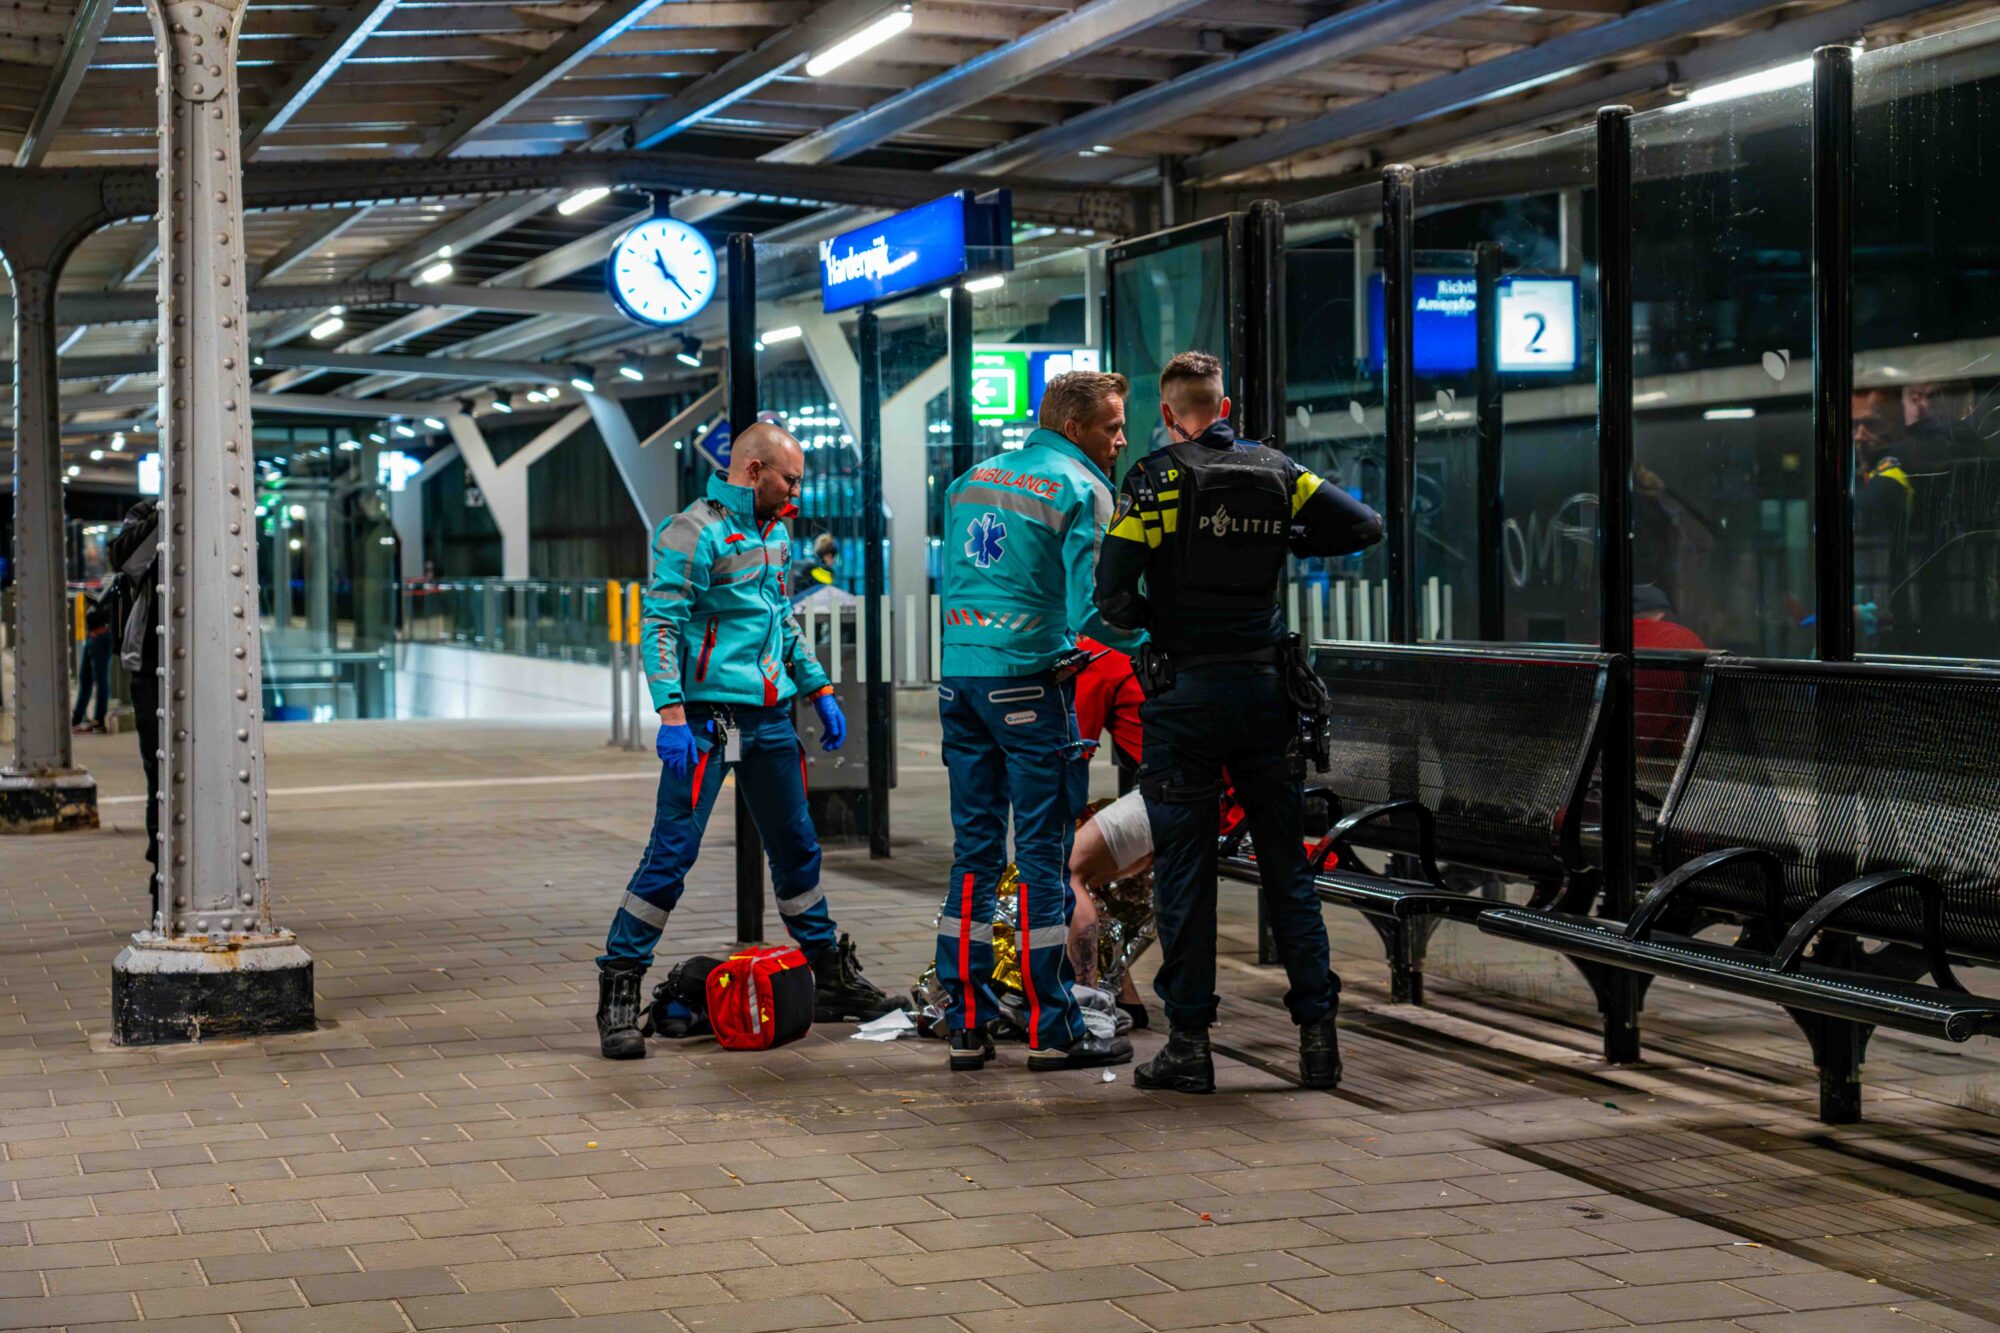 Man neergestoken op station in Harderwijk; vier mensen aangehouden